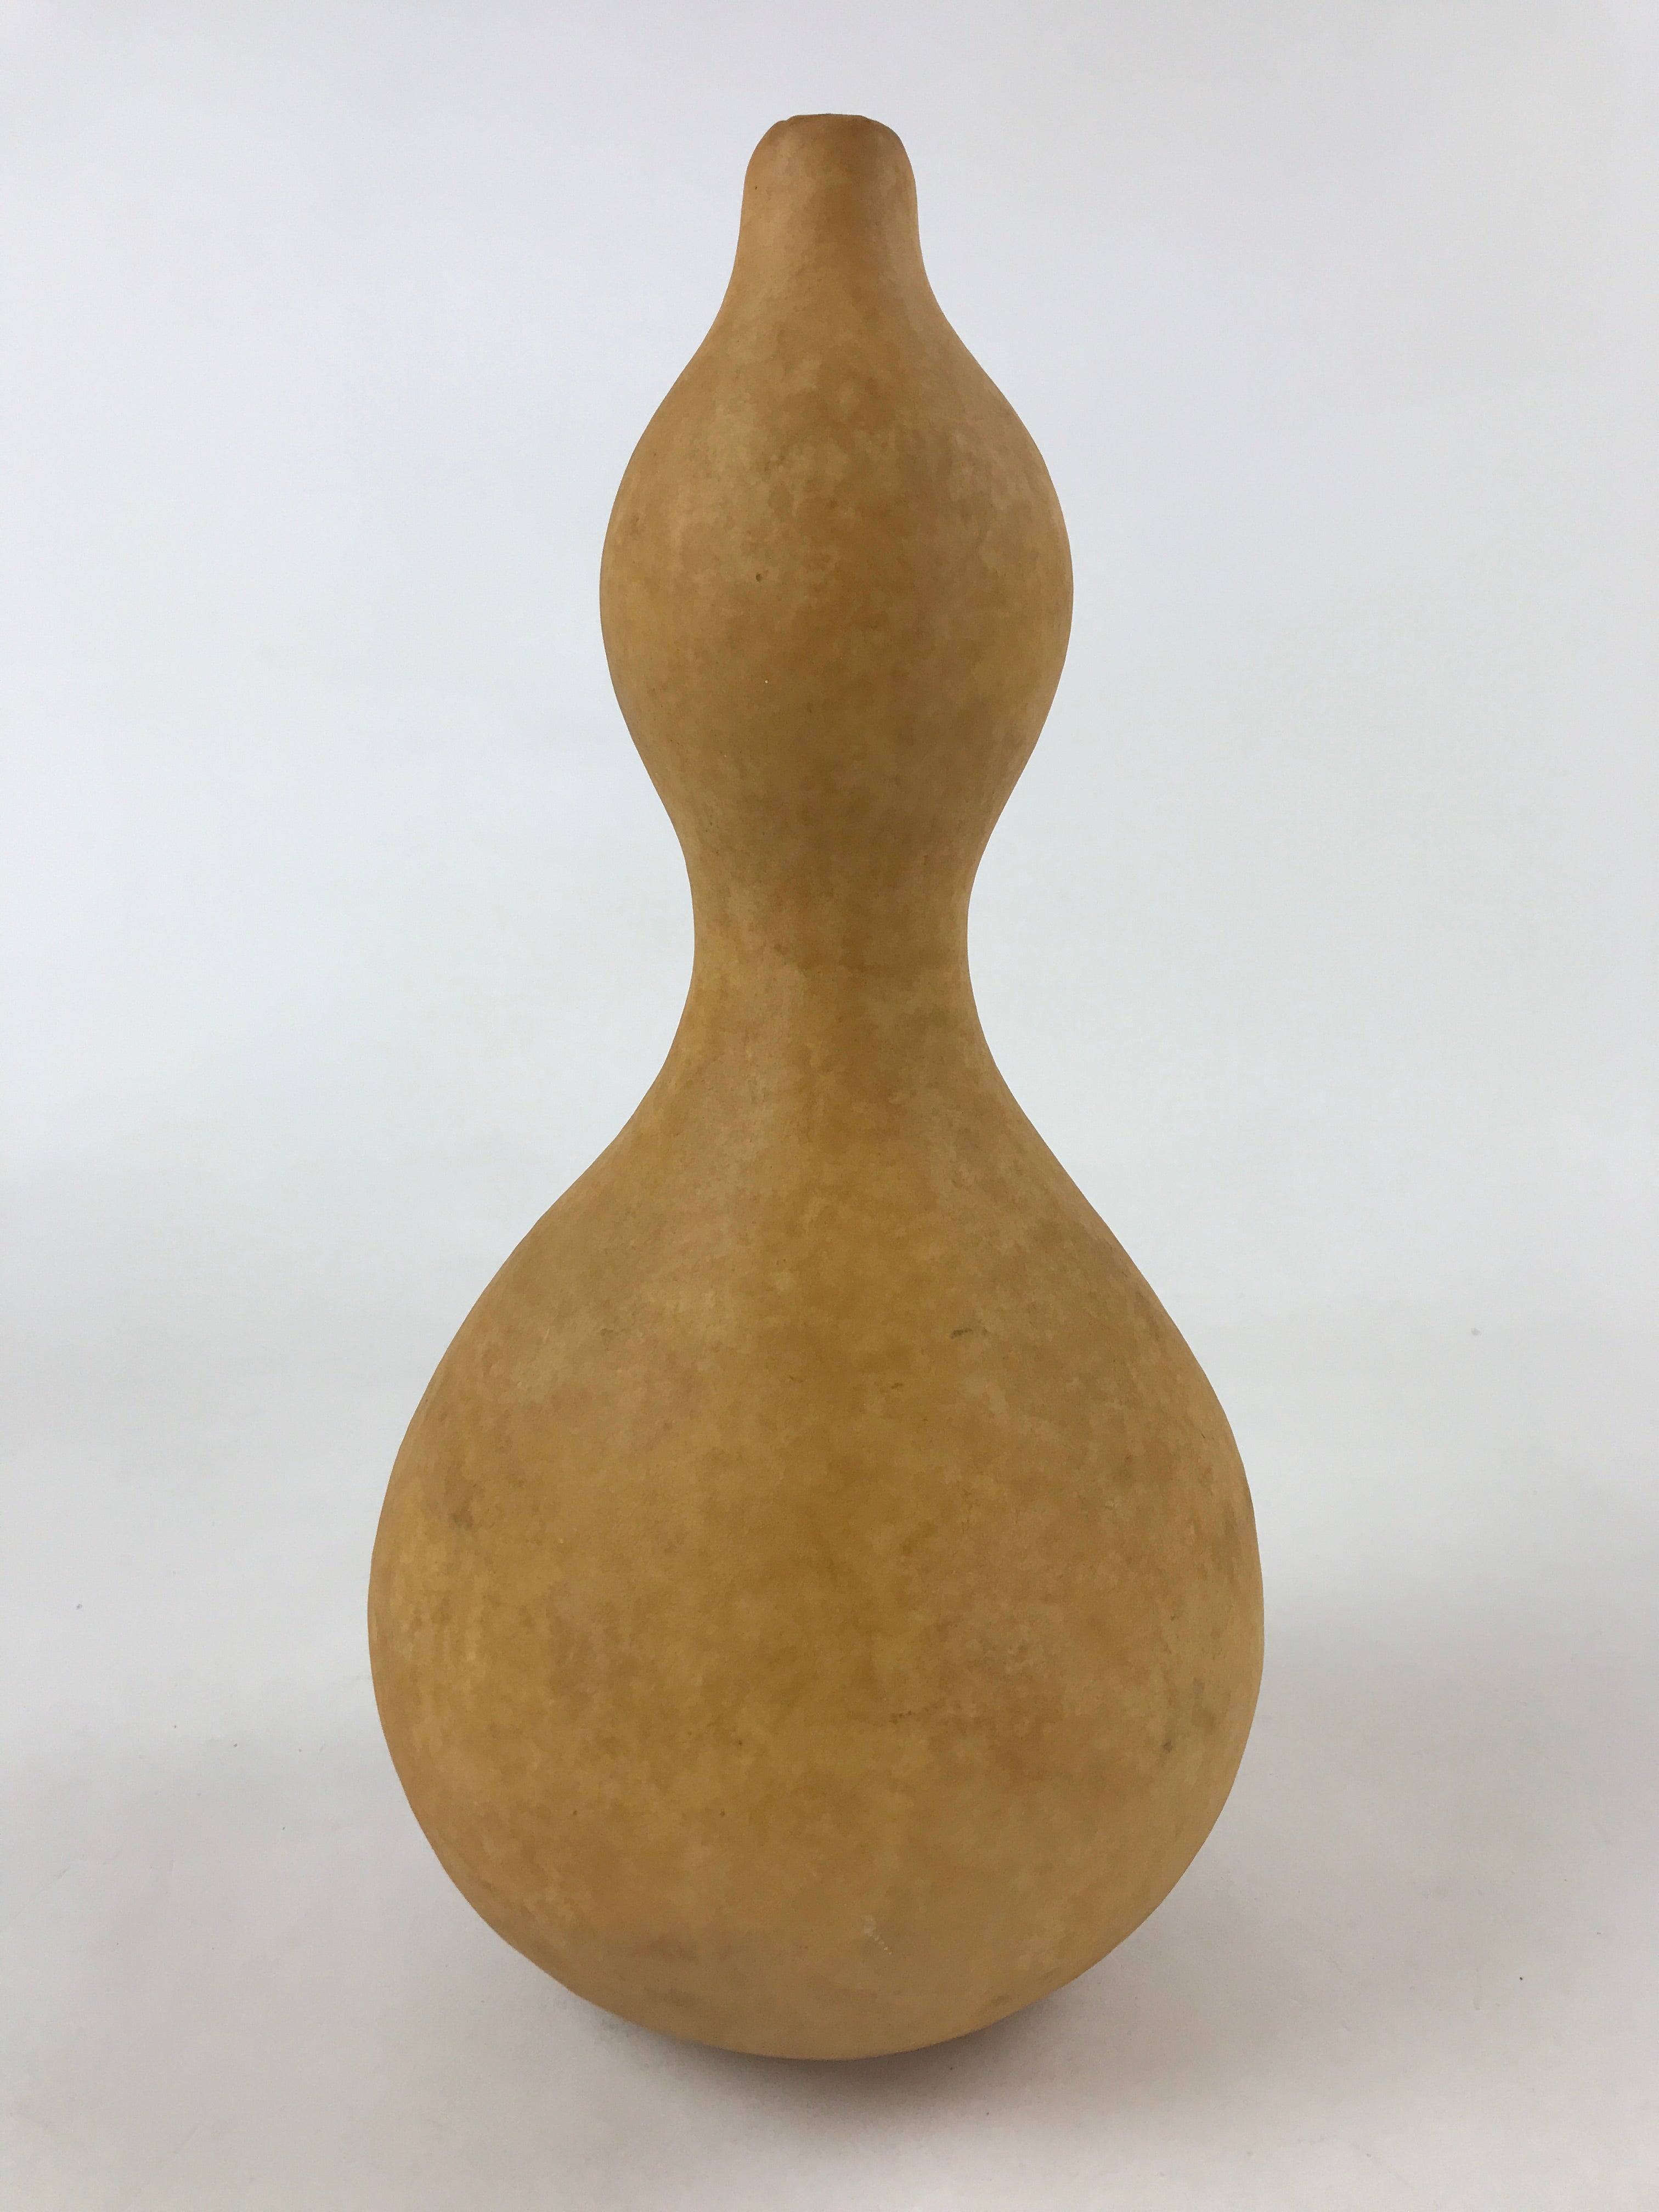 Japanese Natural Hyotan Gourd Vtg Sake Bottle Lucky Charm Large Calabash G252